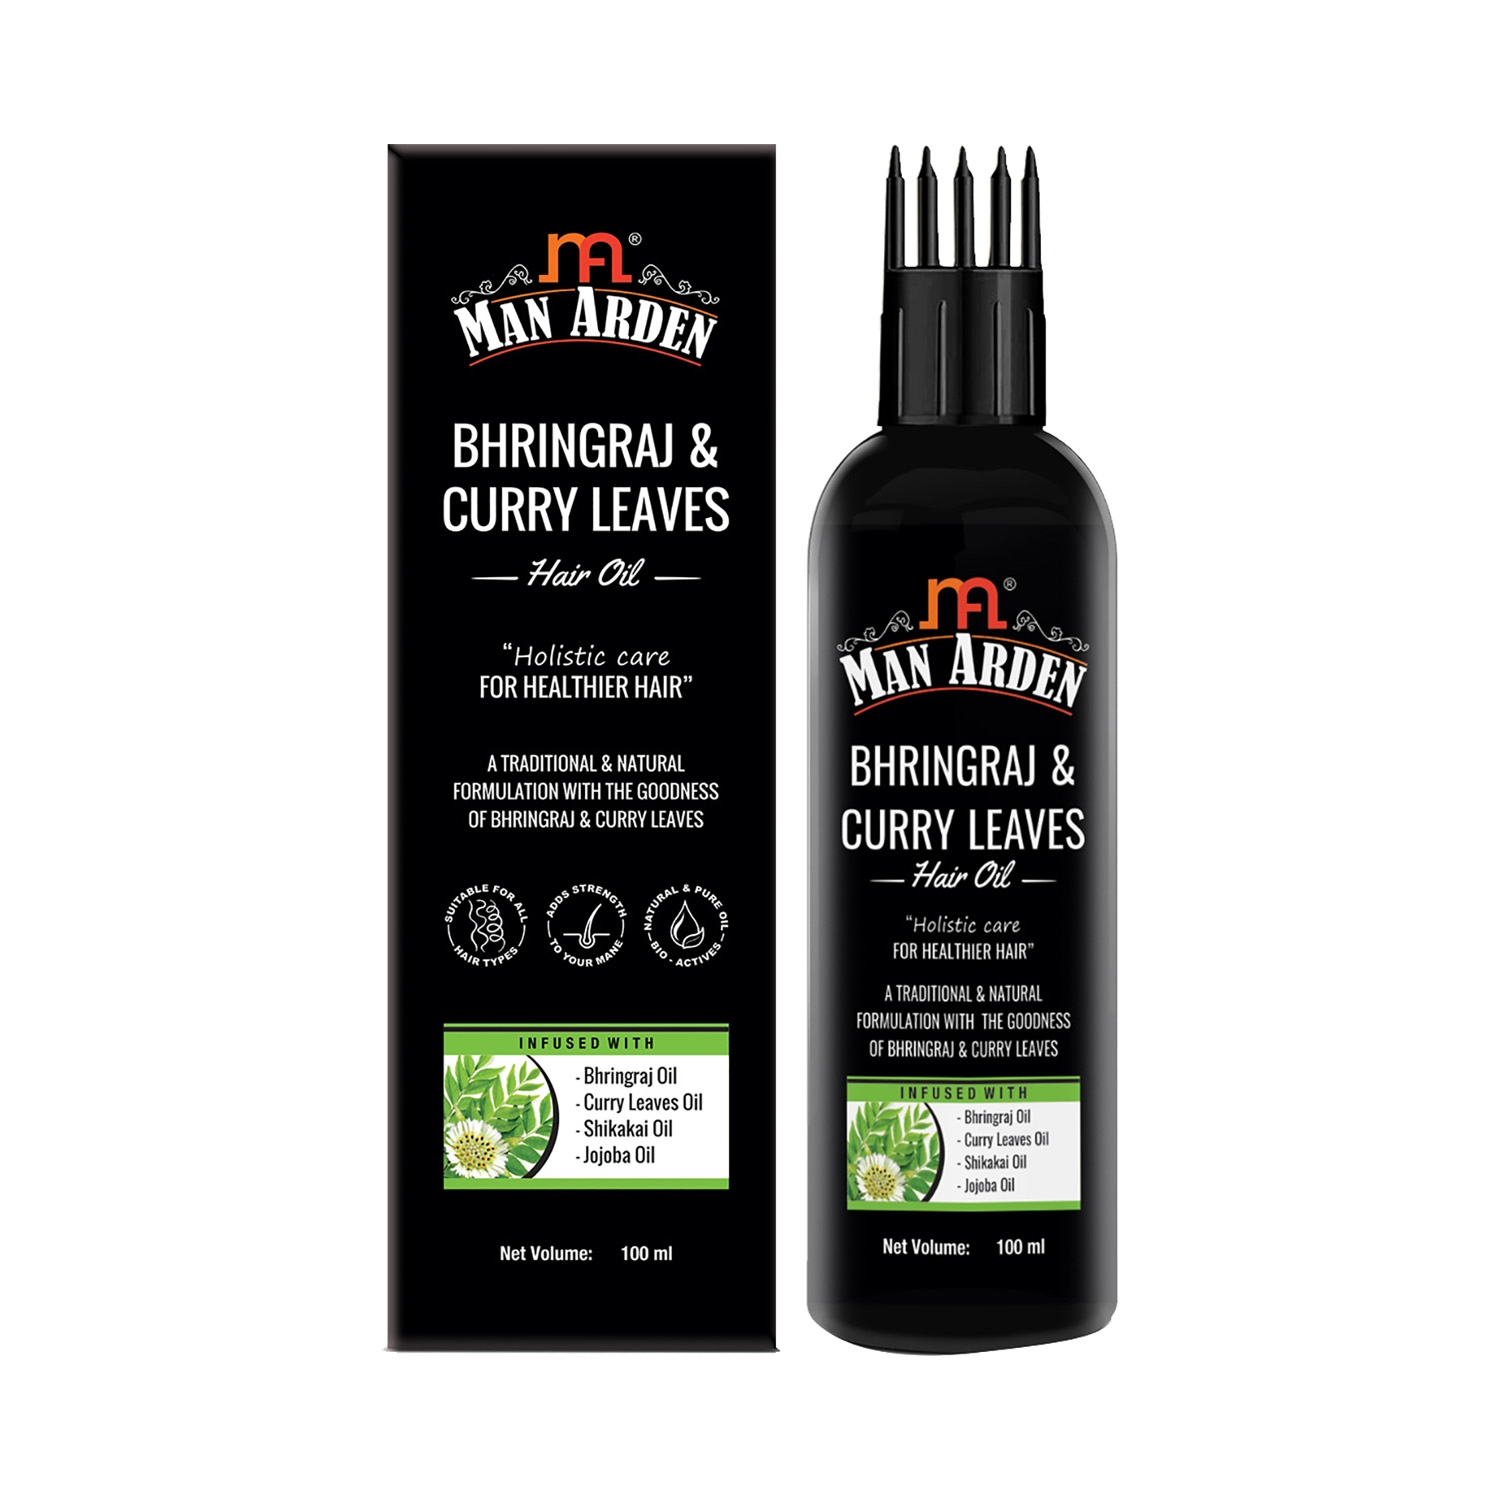 Man Arden Bhringraj & Curry Leaves Hair Oil For Hair Strength With Shikakai Oil & Jojoba Oil (100ml)